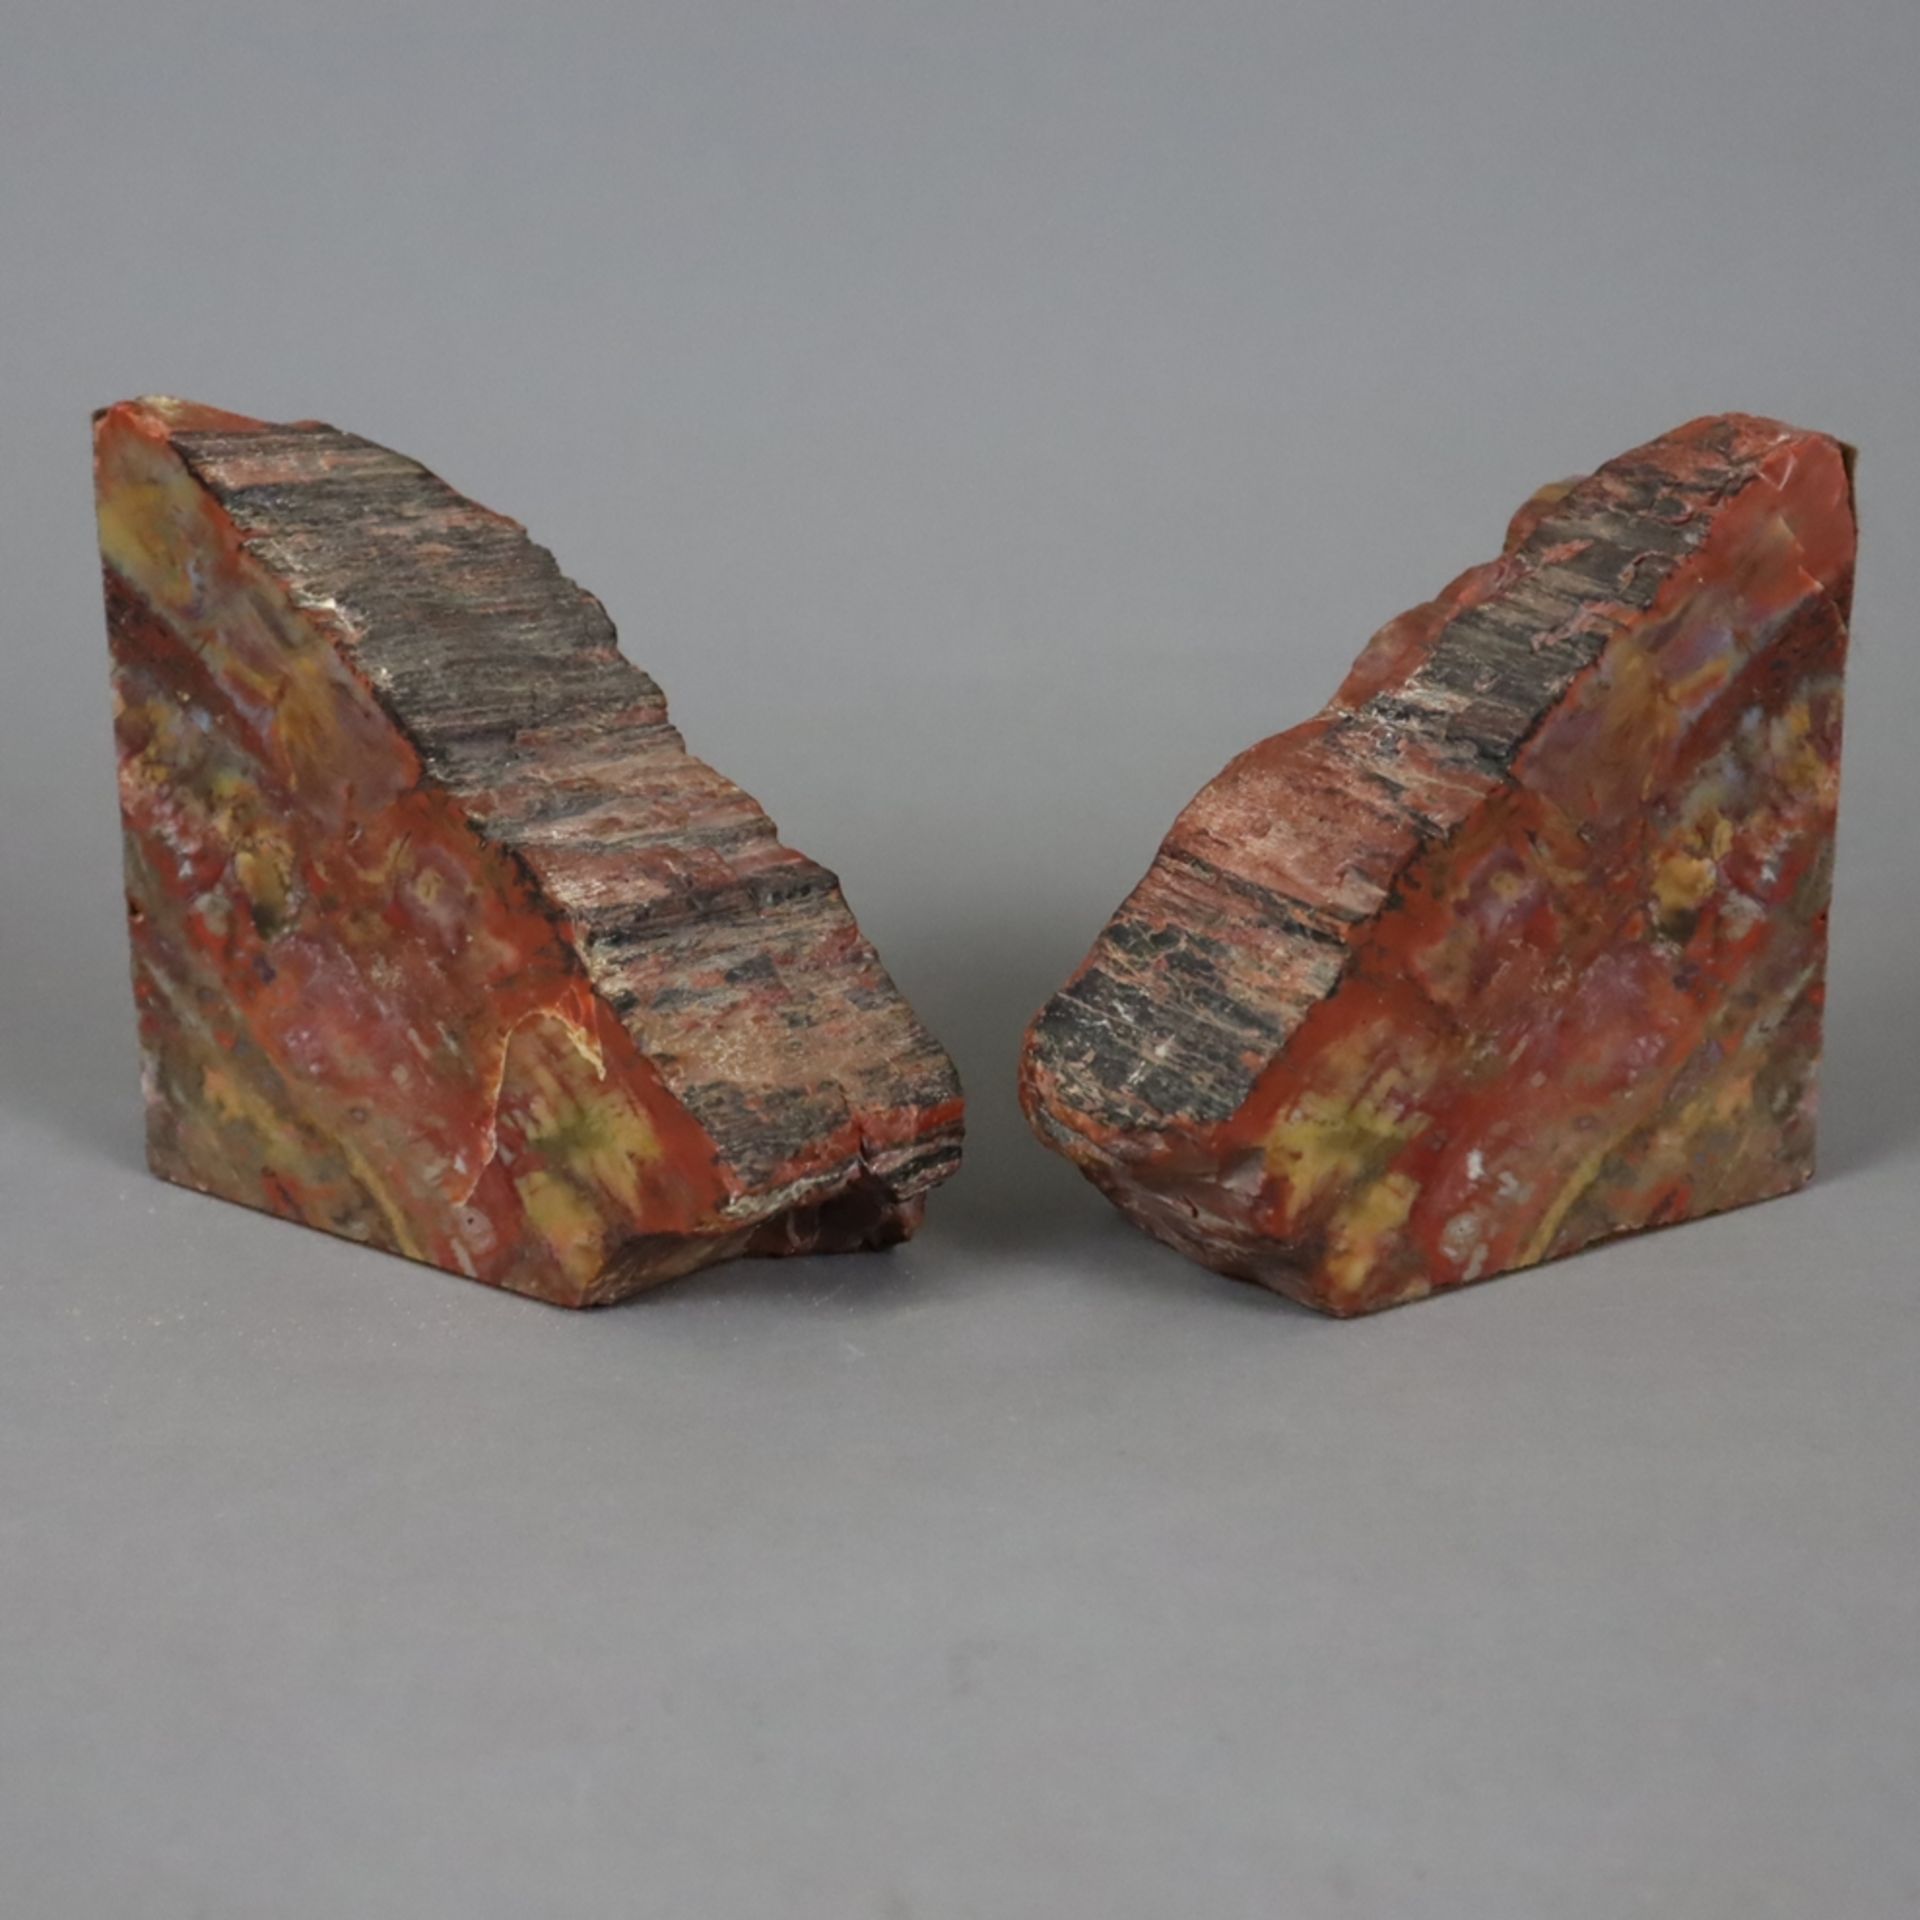 Ein Paar Buchstützen aus versteinertem Holz - Arizona, USA, ca. 160 Millionen Jahre alt, teils glat